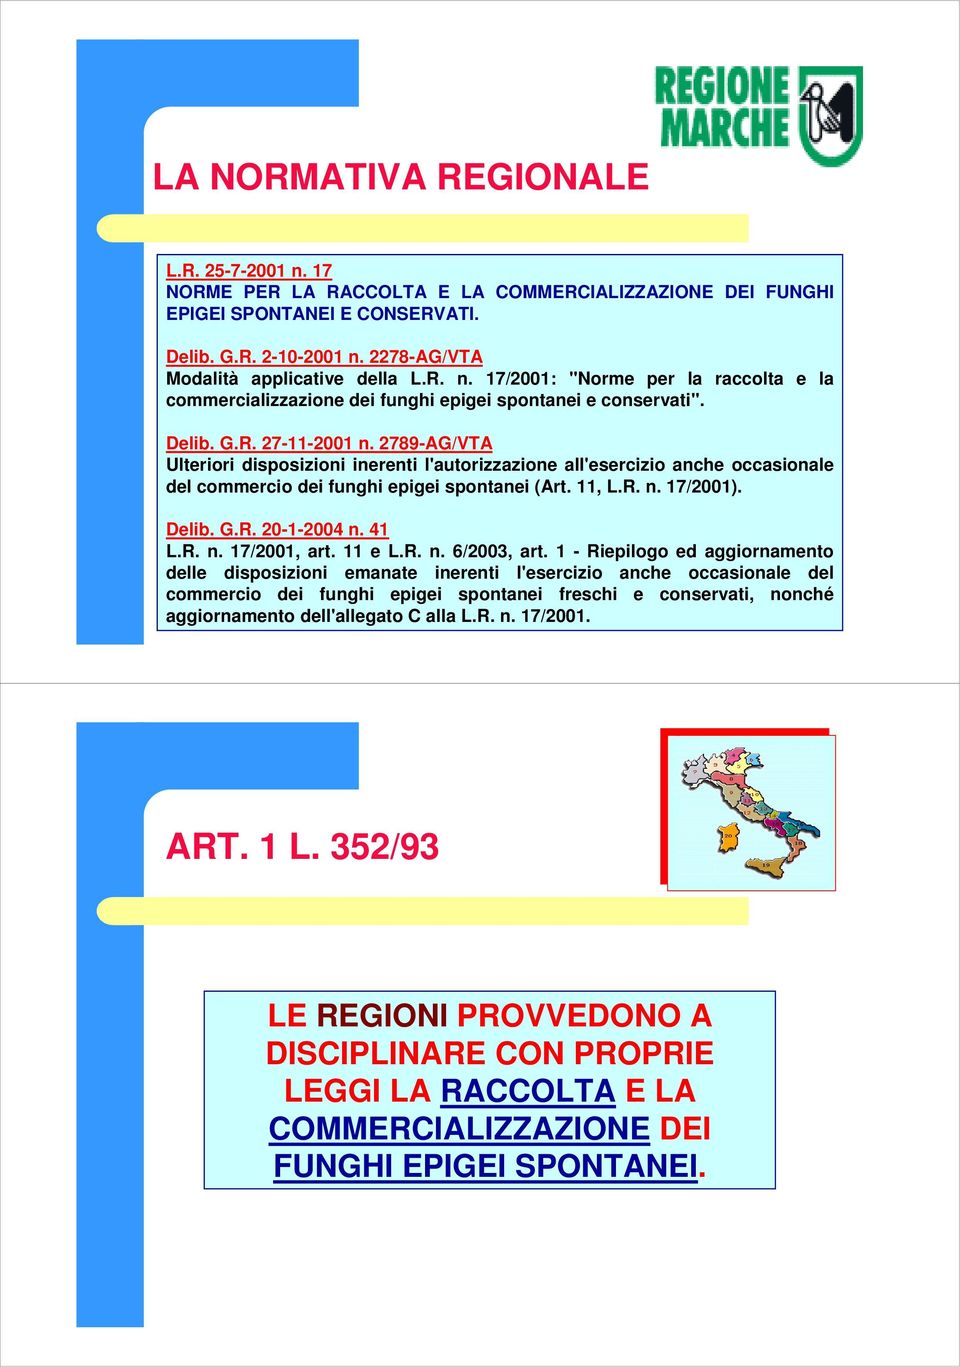 2789-AG/VTA Ulteriori disposizioni inerenti l'autorizzazione all'esercizio anche occasionale del commercio dei funghi epigei spontanei (Art. 11, L.R. n. 17/2001). Delib. G.R. 20-1-2004 n. 41 L.R. n. 17/2001, art.